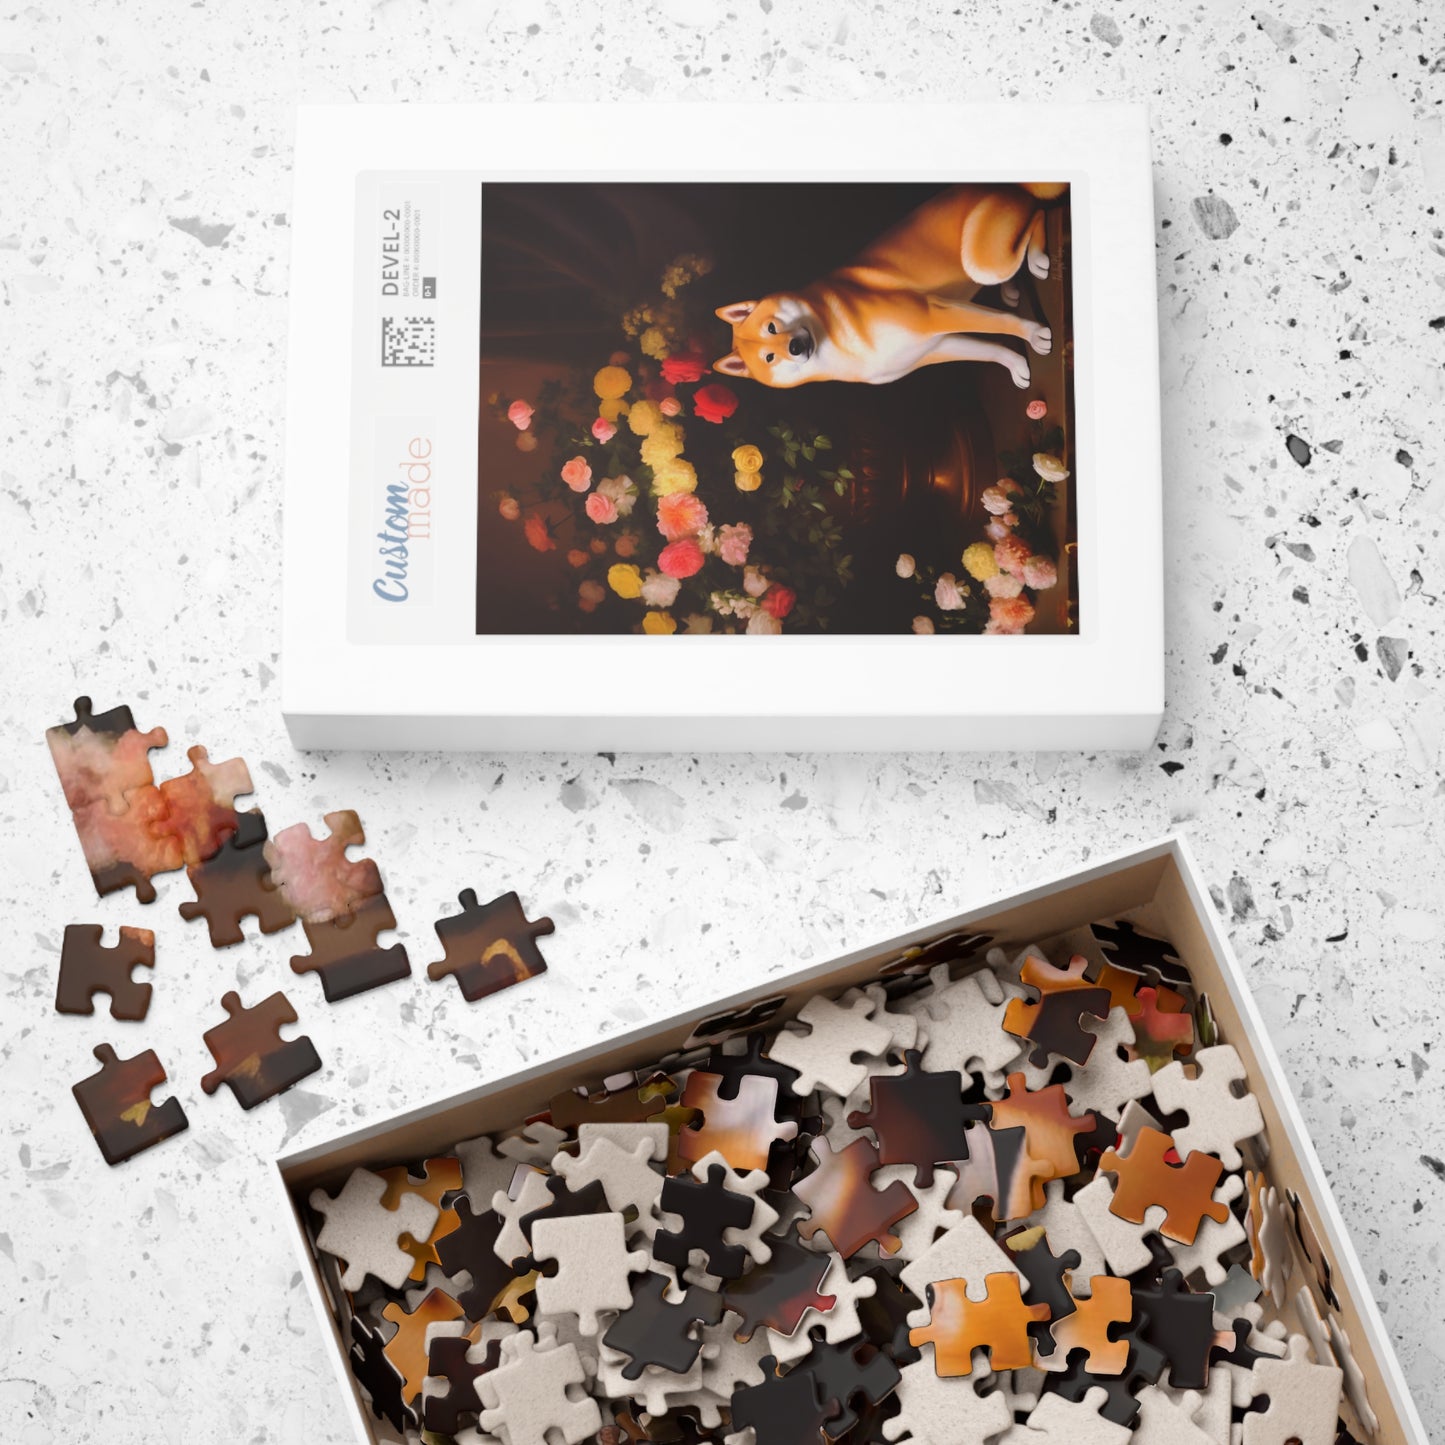 Shiba Inu Sitting Near a Flower Vase | Jigsaw Puzzle